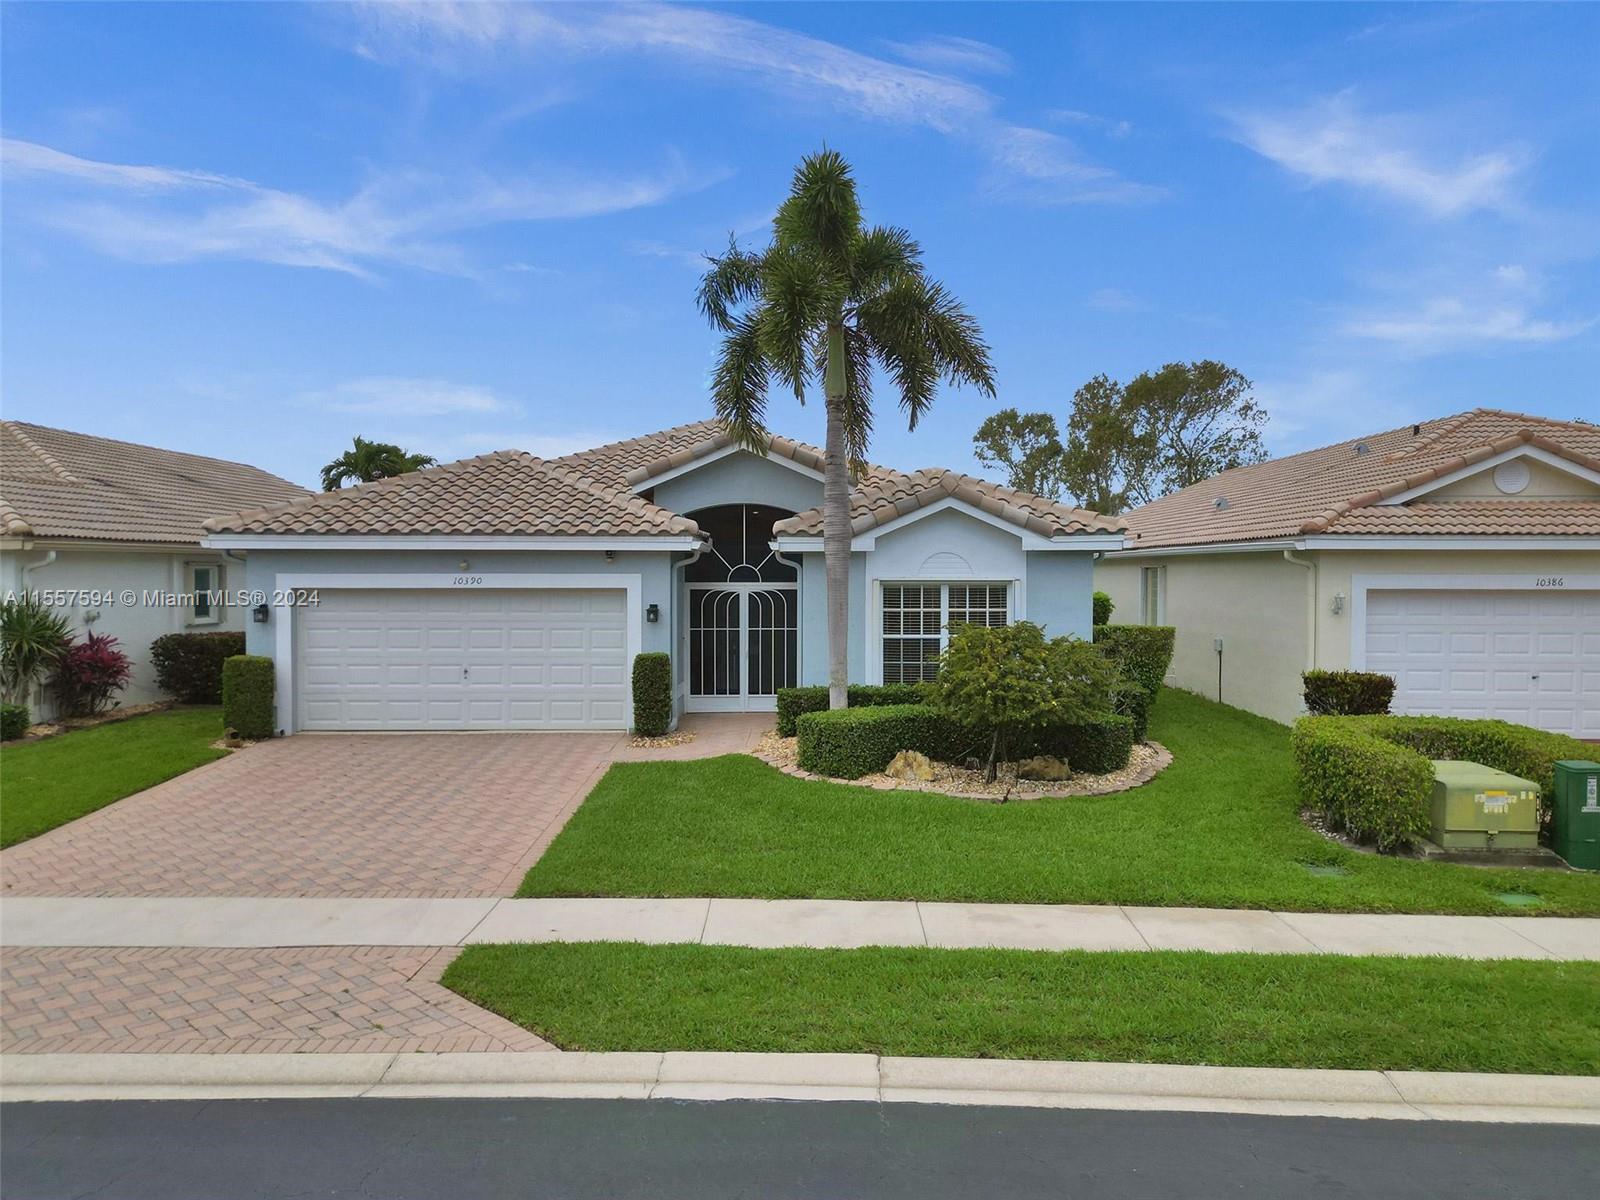 Property for Sale at 10390 E Utopia Cir E Cir, Boynton Beach, Palm Beach County, Florida - Bedrooms: 3 
Bathrooms: 2  - $498,000